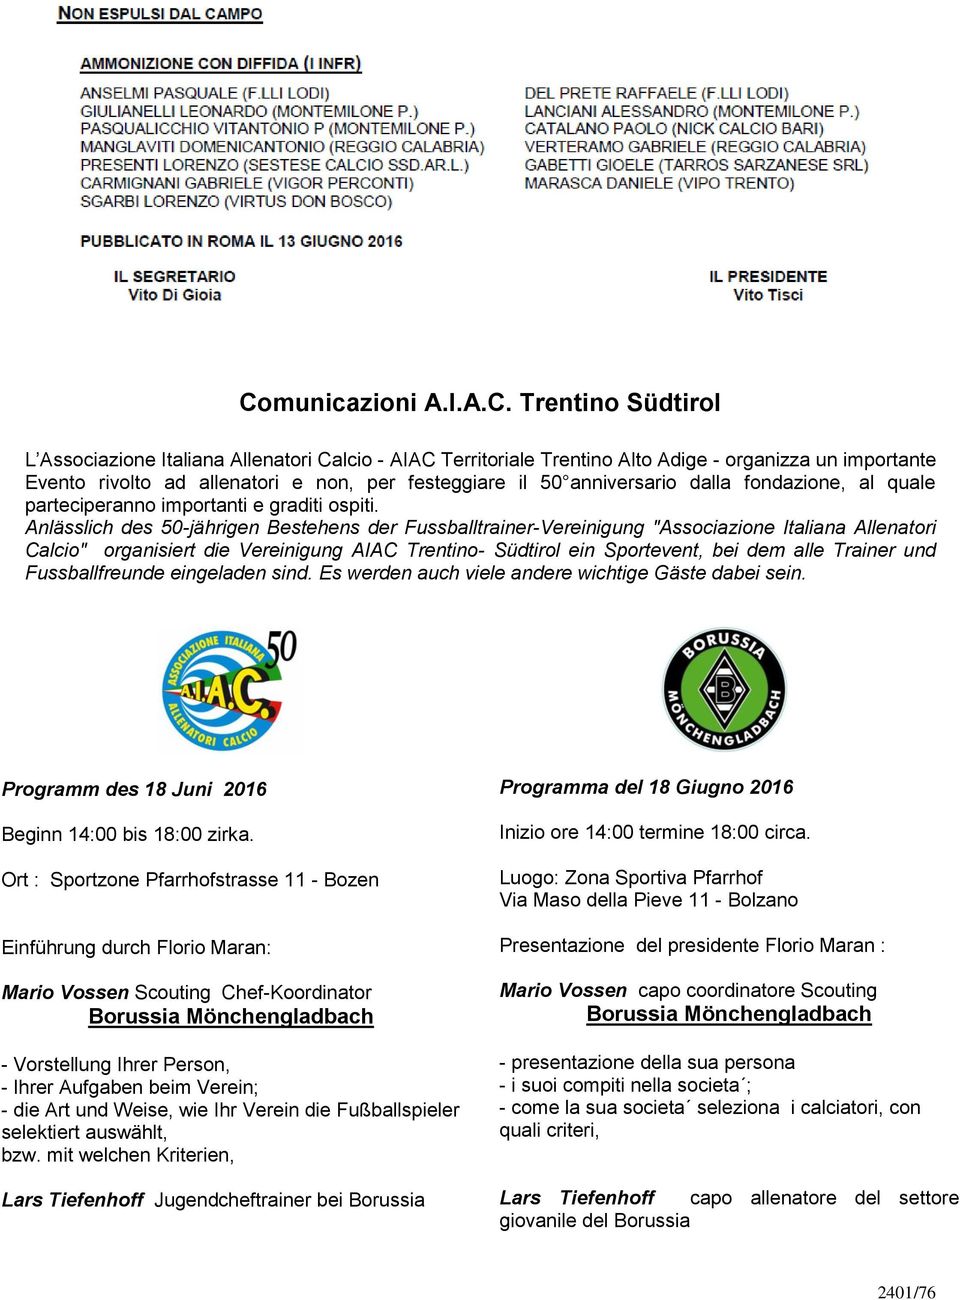 Anlässlich des 50-jährigen Bestehens der Fussballtrainer-Vereinigung "Associazione Italiana Allenatori Calcio" organisiert die Vereinigung AIAC Trentino- Südtirol ein Sportevent, bei dem alle Trainer